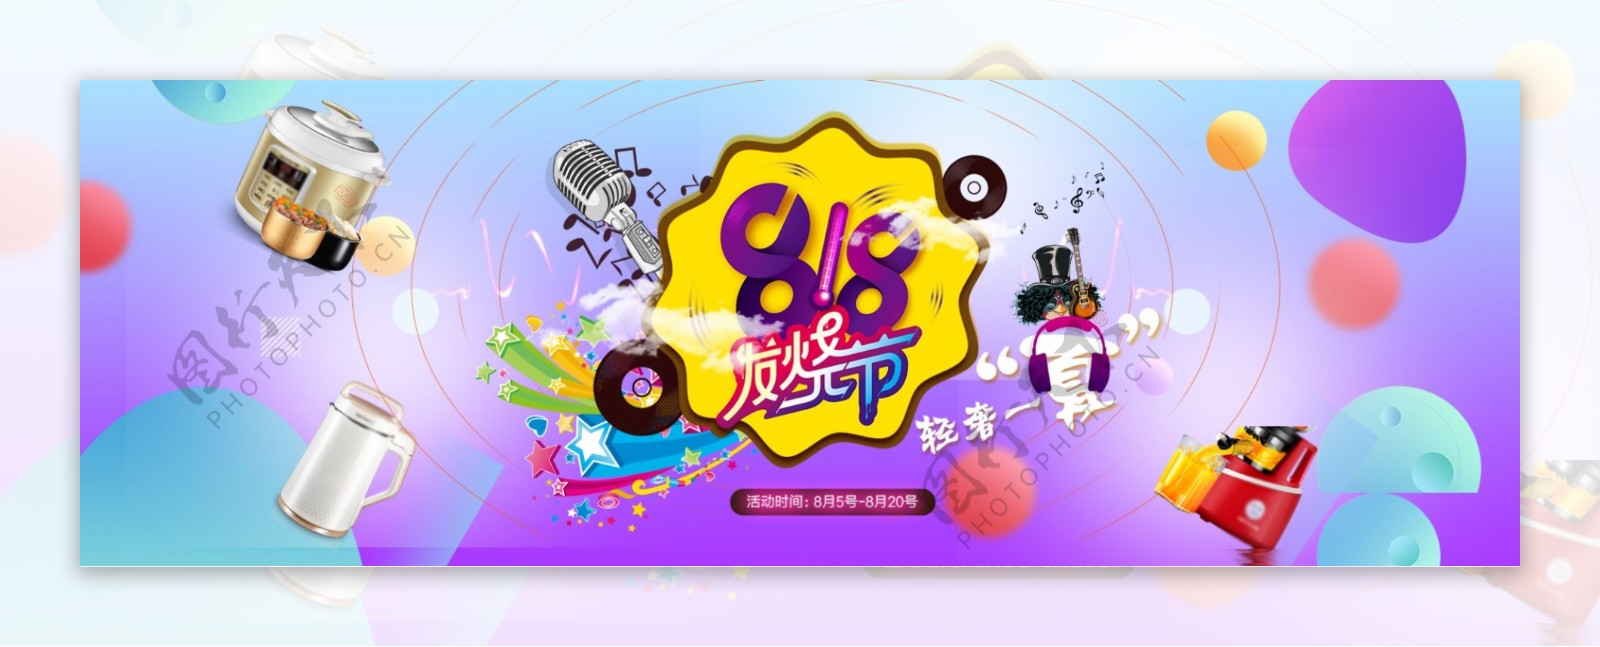 电商淘宝88全球狂欢节家电电器海报banner